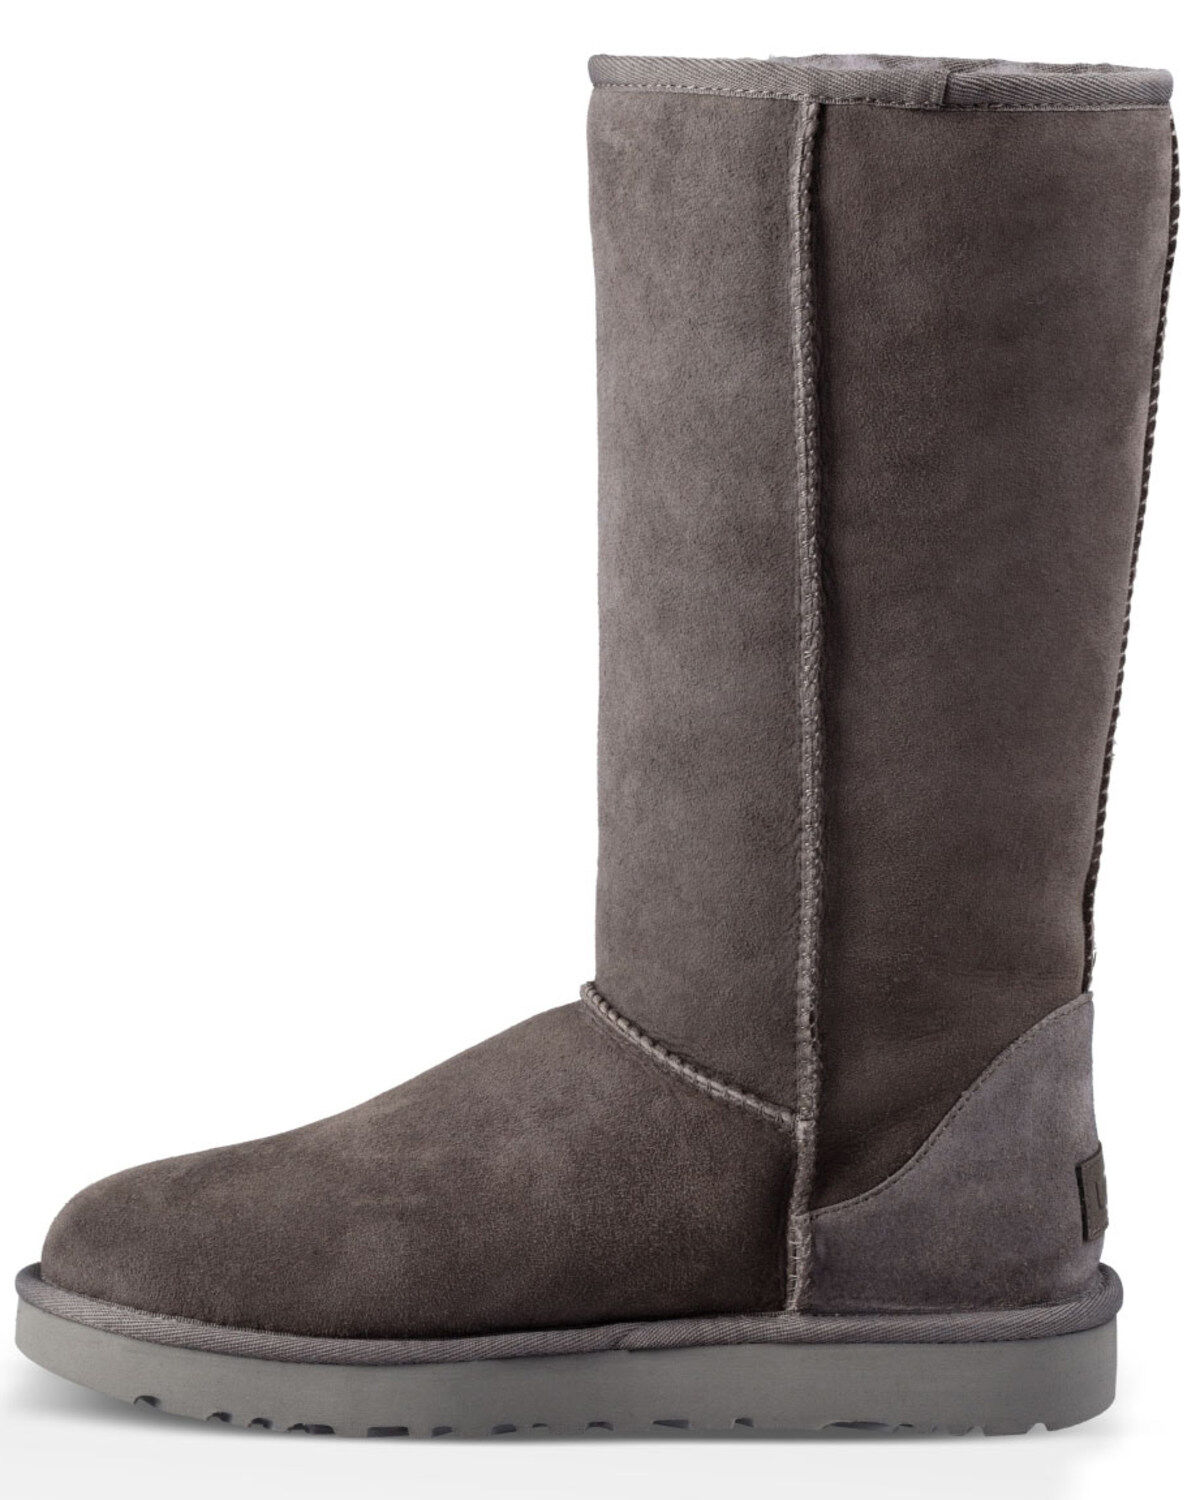 ugg boots women gray